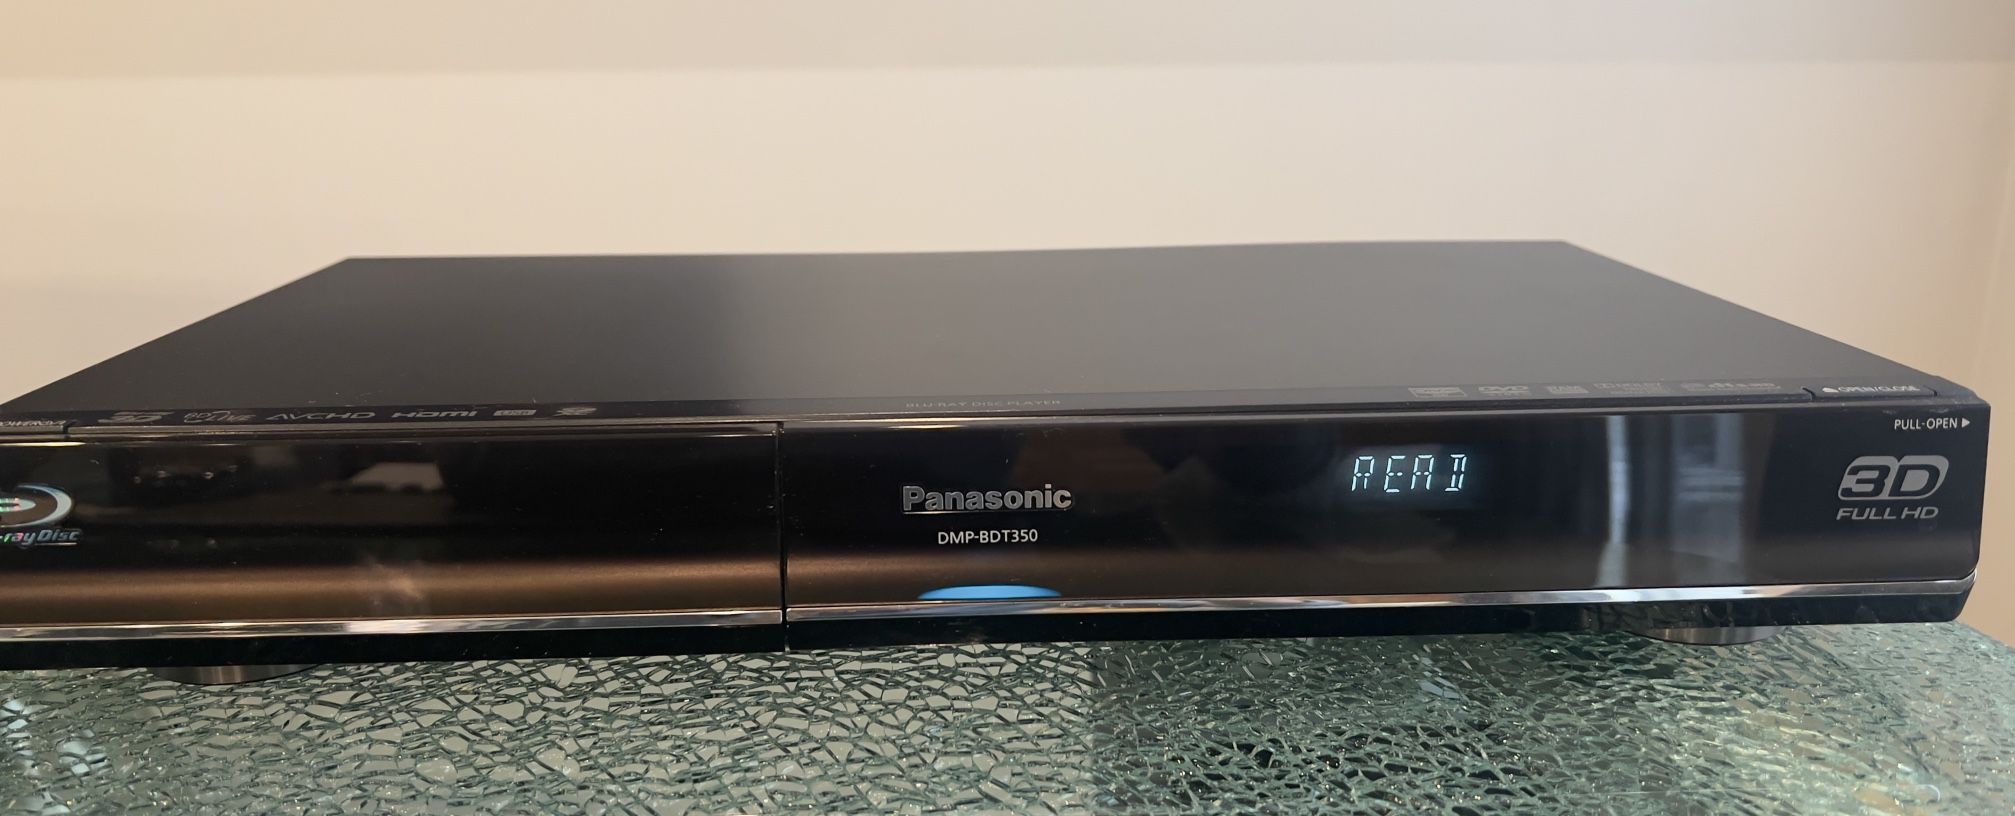 Panasonic Dmp-bdt350 Disc Blu-ray Disc Player